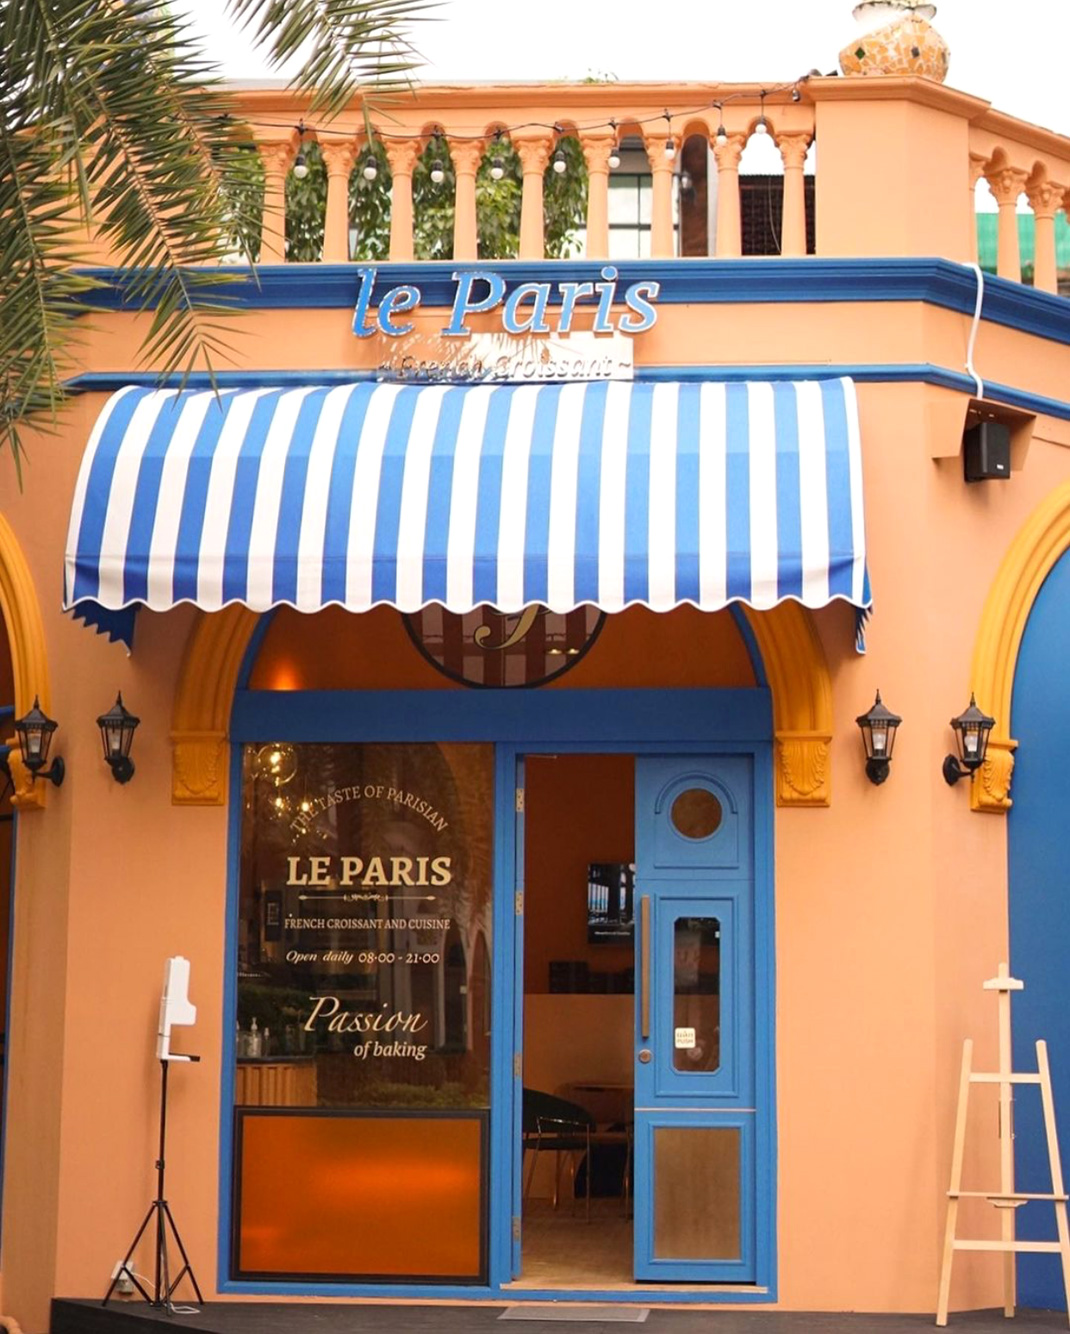 面包店Le Paris Croissant 泰国 曼谷 面包店 法式 橙色 蓝色 logo设计 vi设计 空间设计